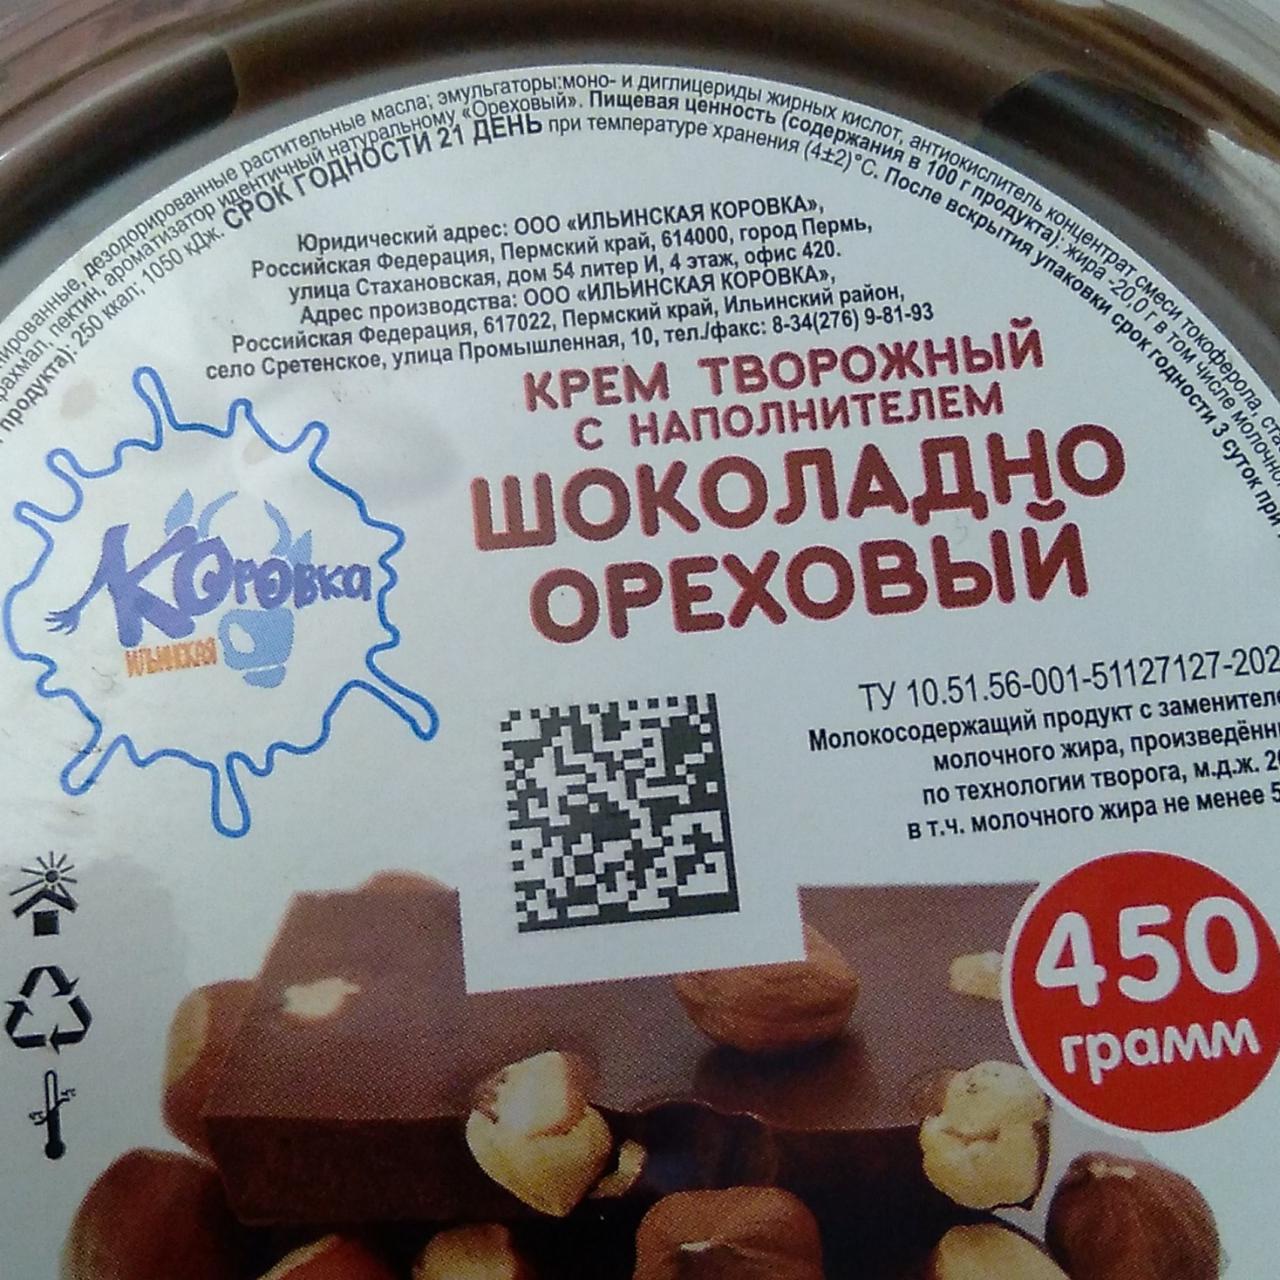 Фото - Крем творожный шоколад орех Ильинская коровка